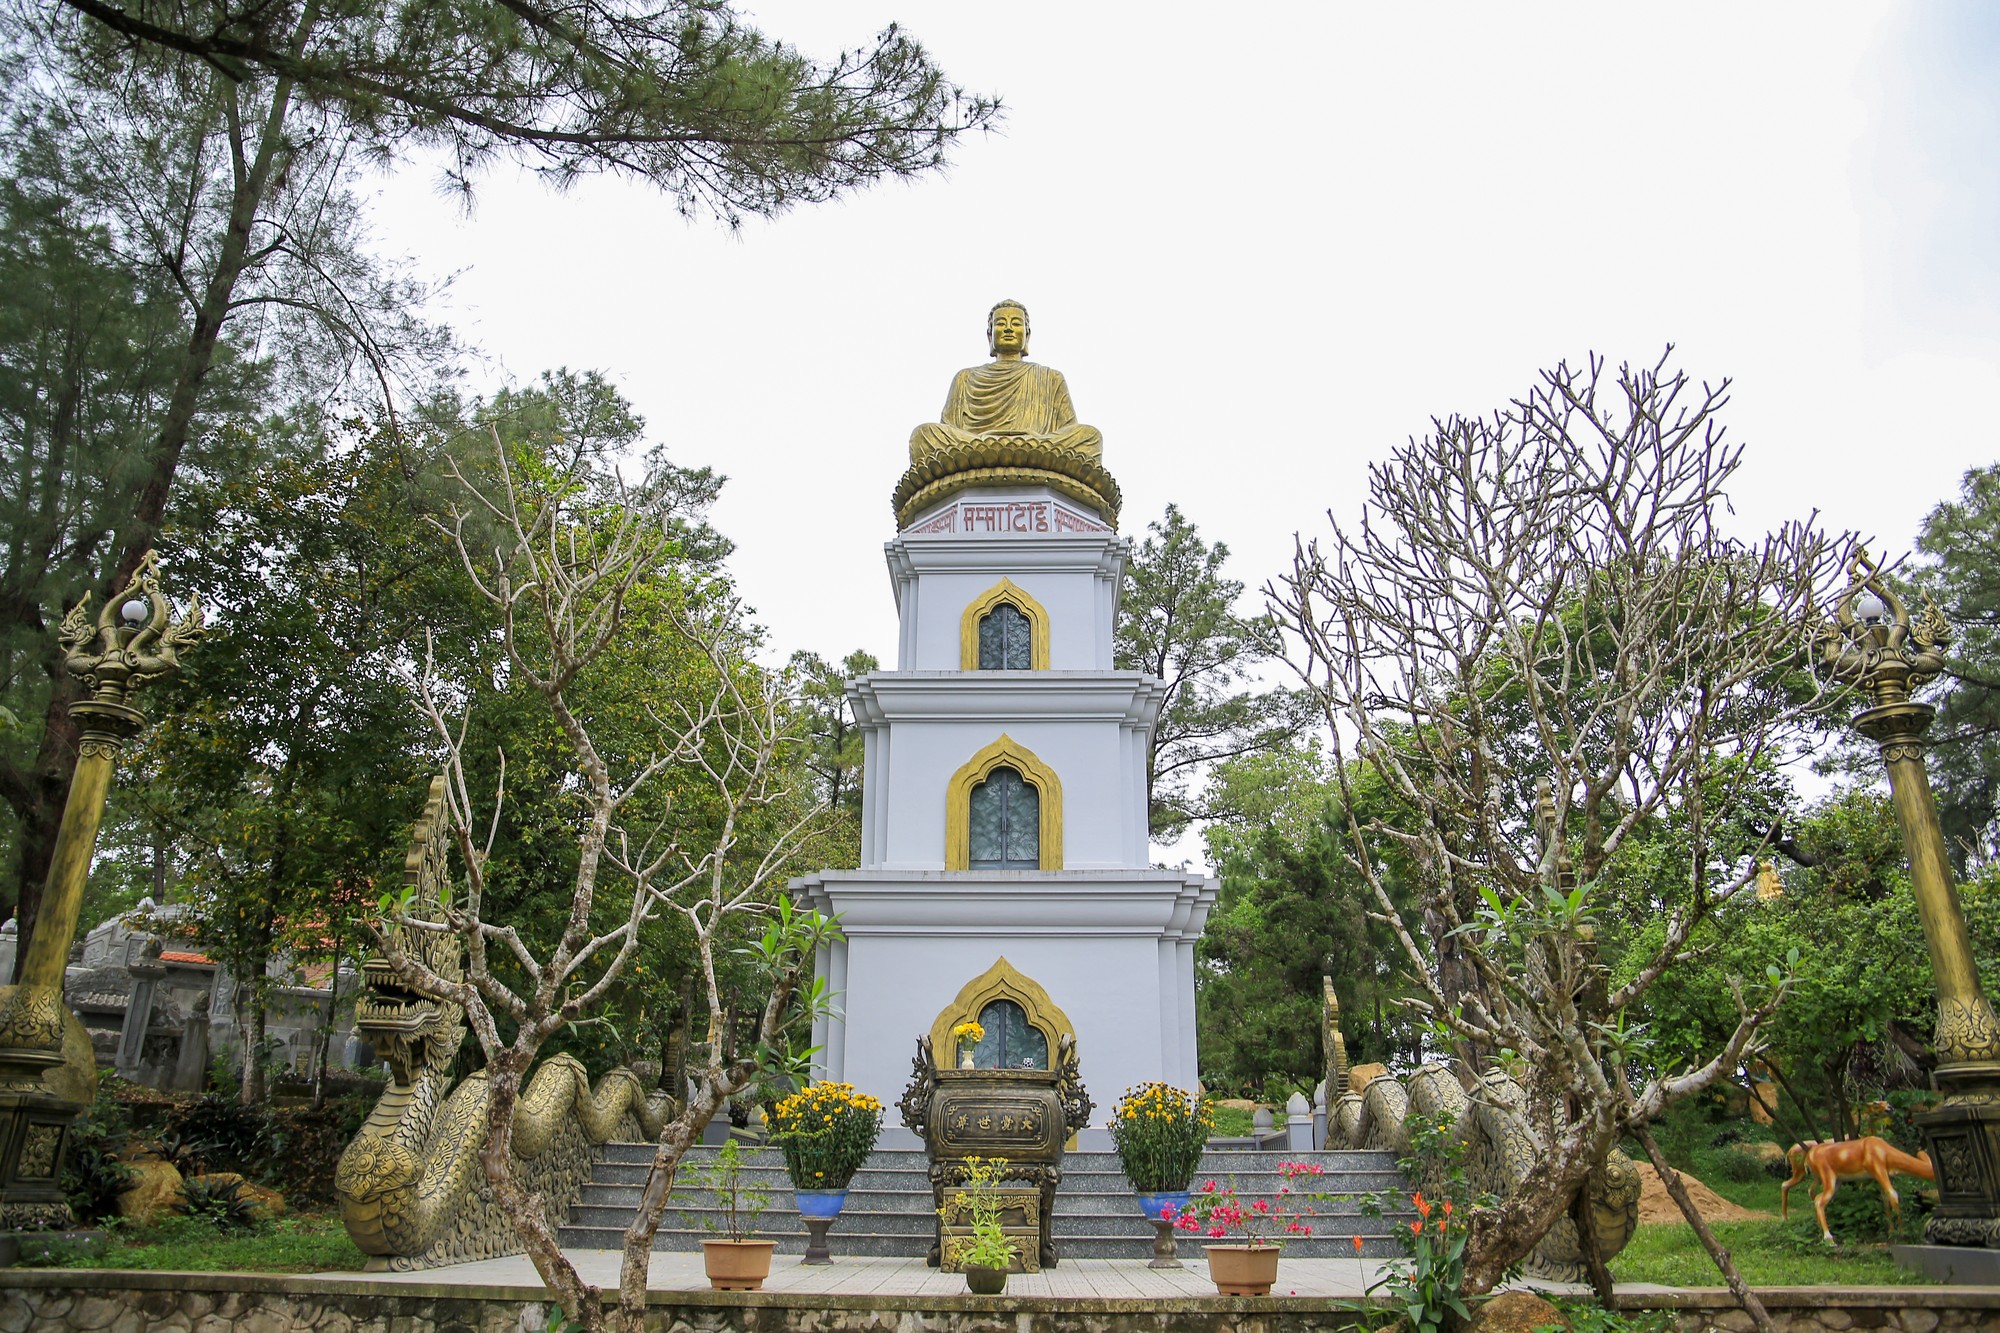 Trong khuôn viên chùa còn có nhiều công trình kiến trúc khác như: Tượng Phật đứng, tượng Phật nằm, tượng Kỳ Lân một sừng, các đỉnh tháp thiết đặt trên nhiều phiến đá,...